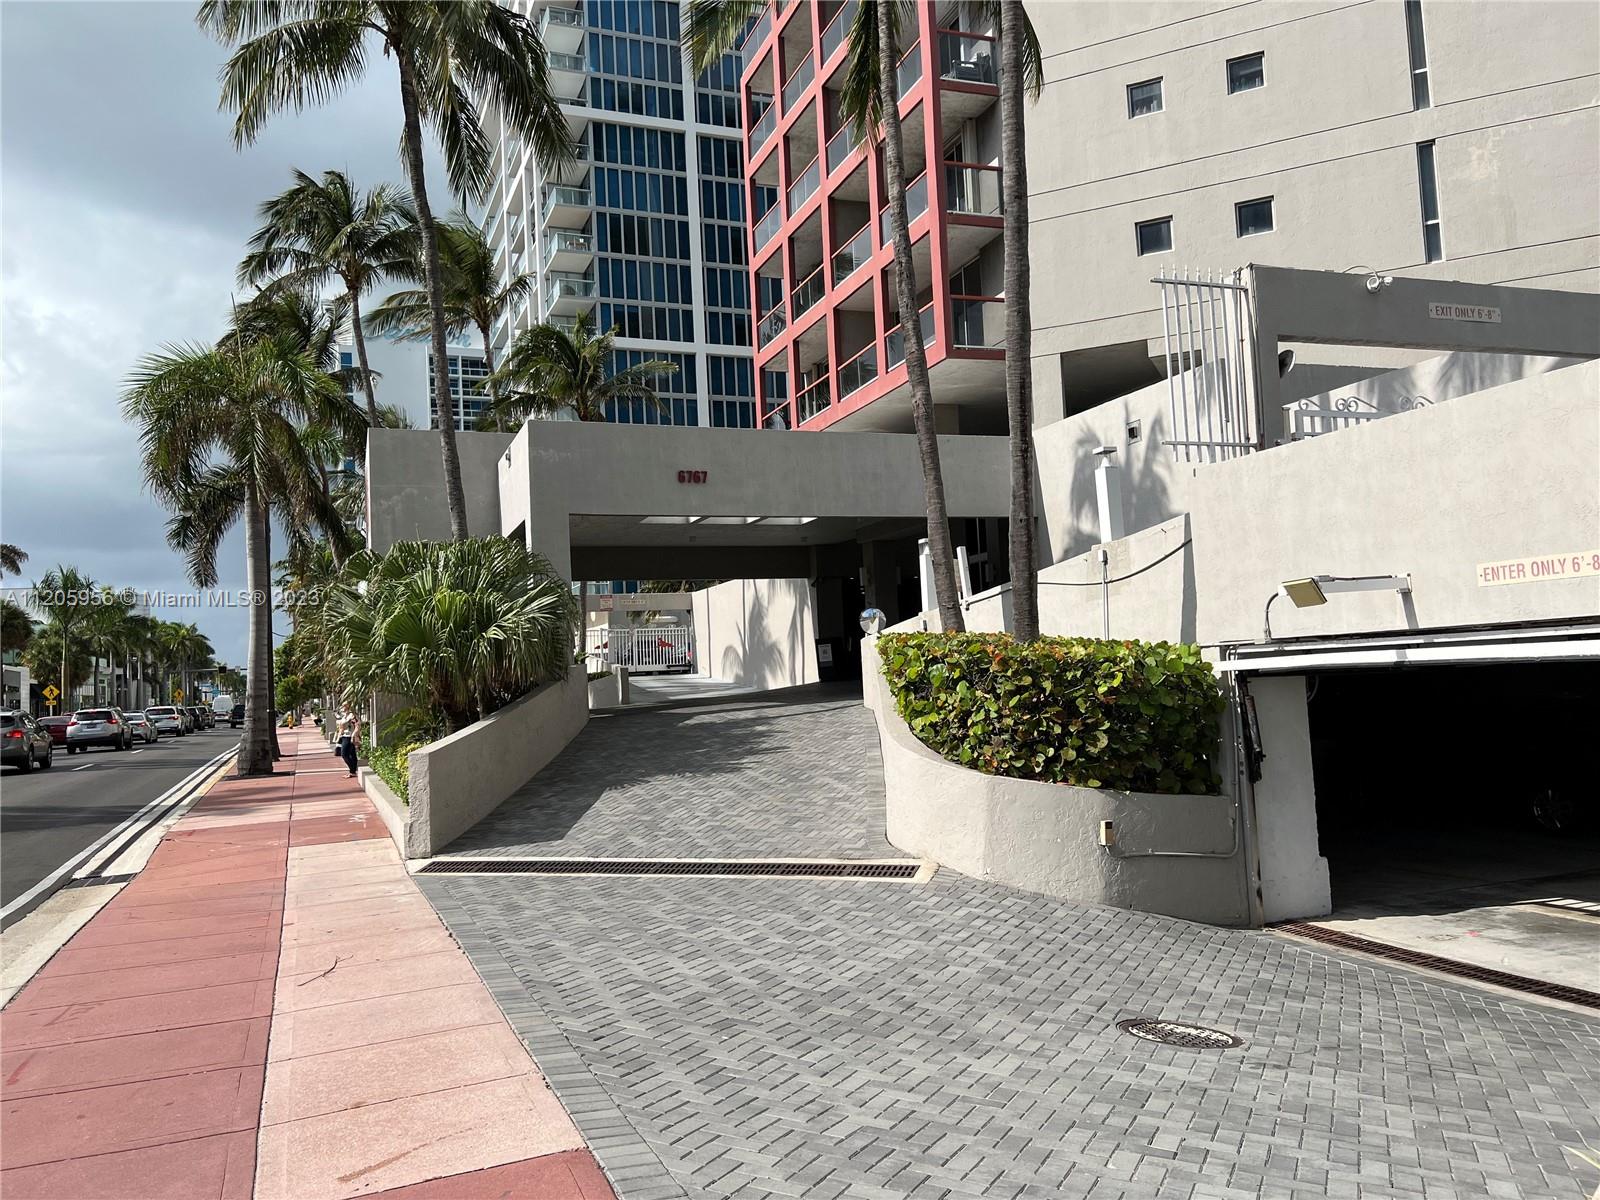 6767 Collins Ave unit 507 Miami Beach-parking entrance